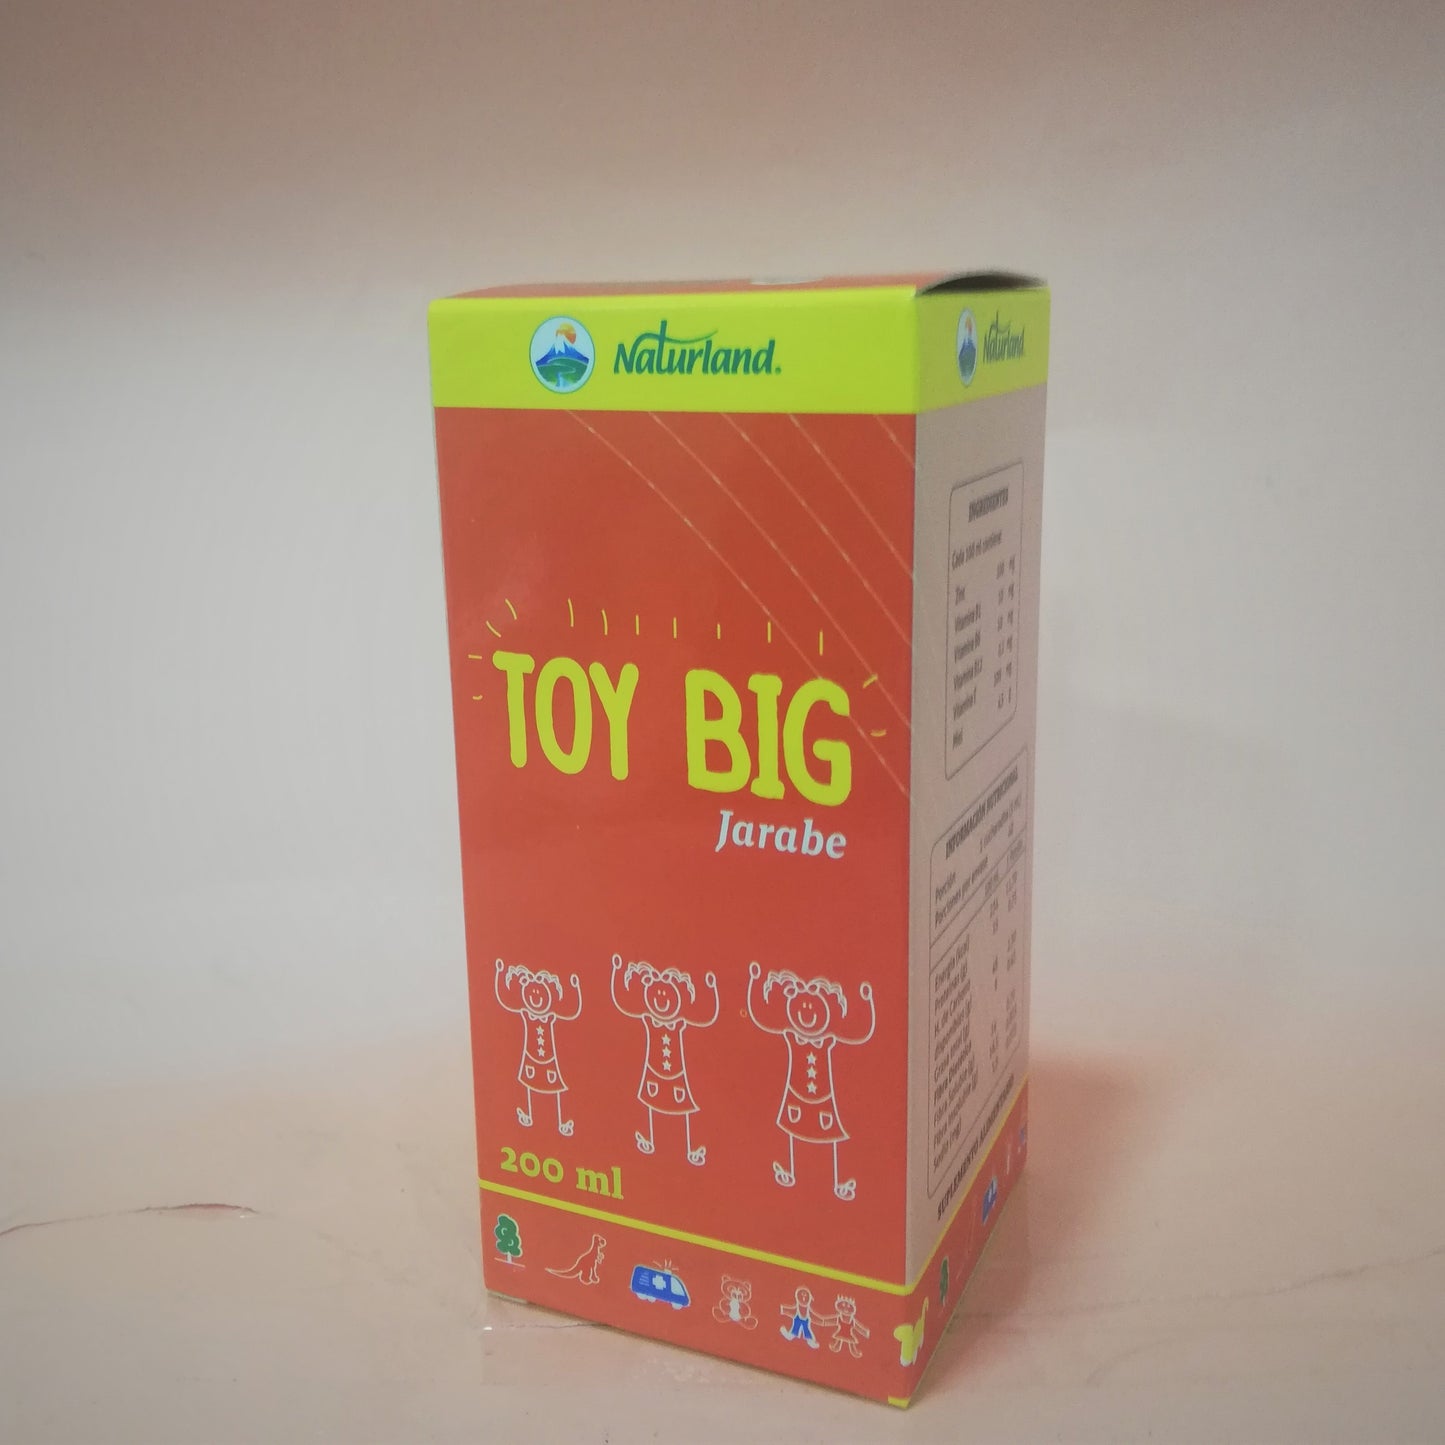 Toy Big